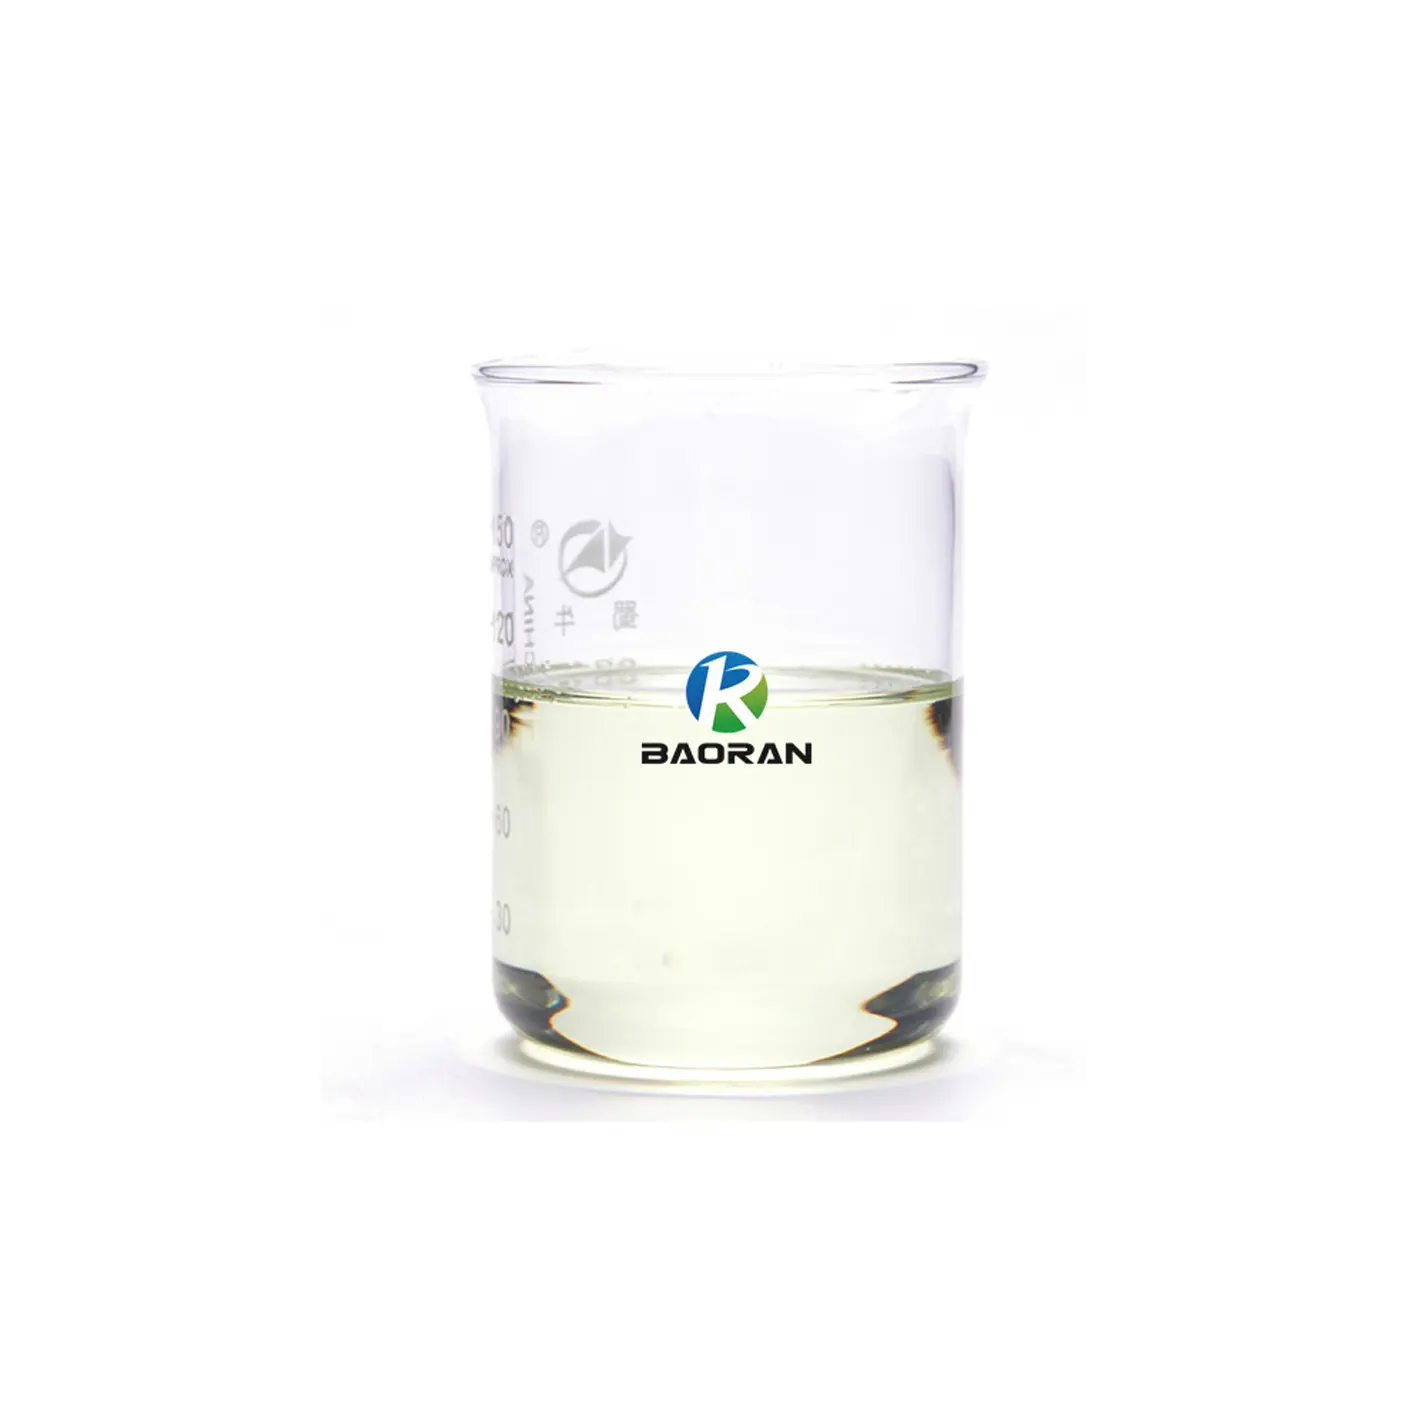 Hoge Kwaliteit Donlube C-Serie In Water Oplosbare Polyethers (Pag Donluble C1150/C2350/C2460) Voor Tandwielolie En Vetbasisolie